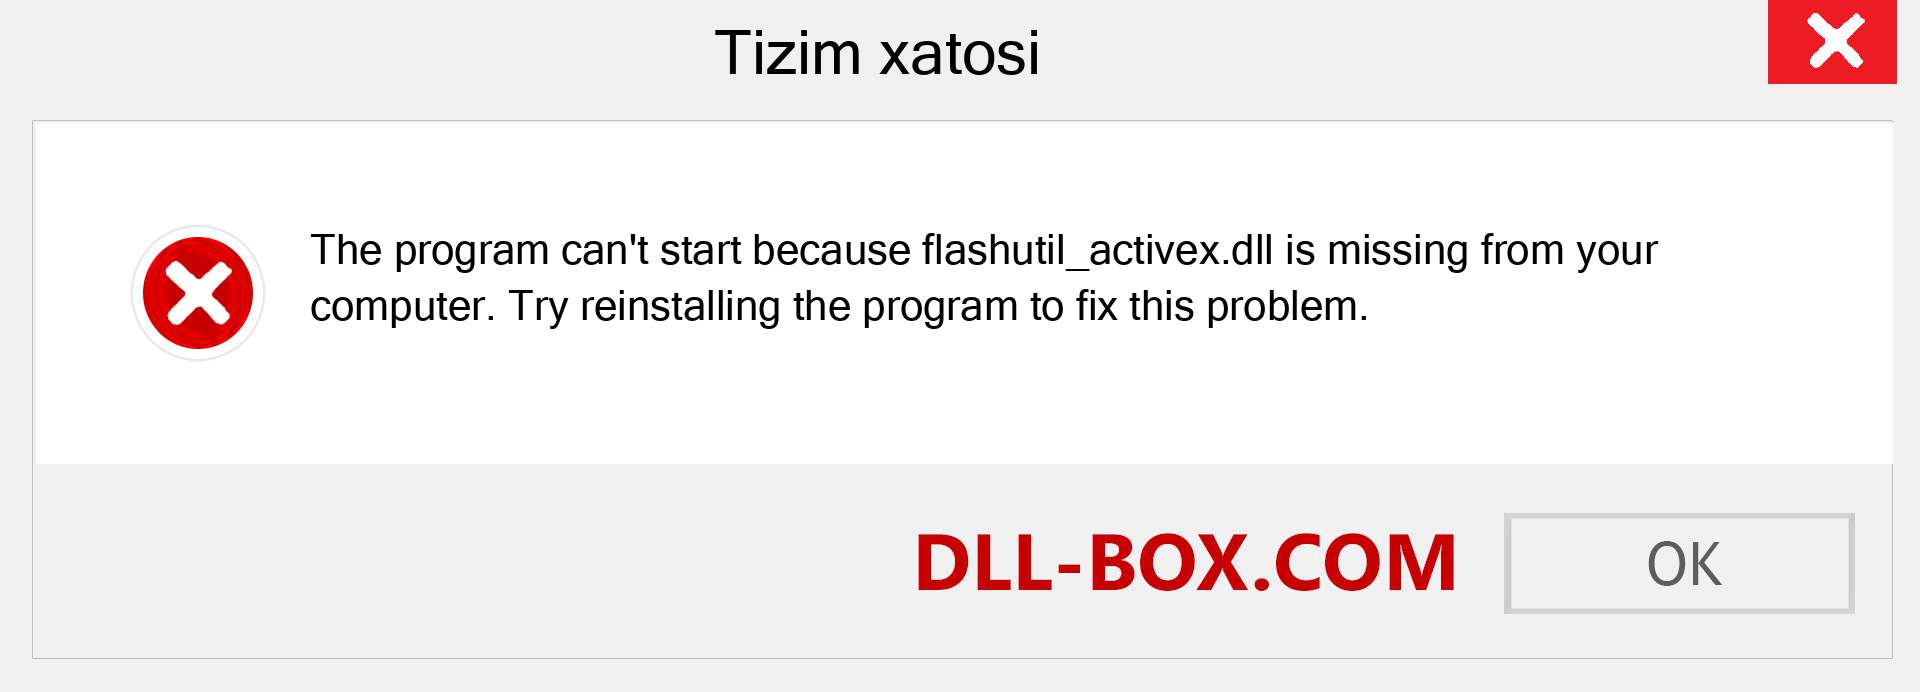 flashutil_activex.dll fayli yo'qolganmi?. Windows 7, 8, 10 uchun yuklab olish - Windowsda flashutil_activex dll etishmayotgan xatoni tuzating, rasmlar, rasmlar